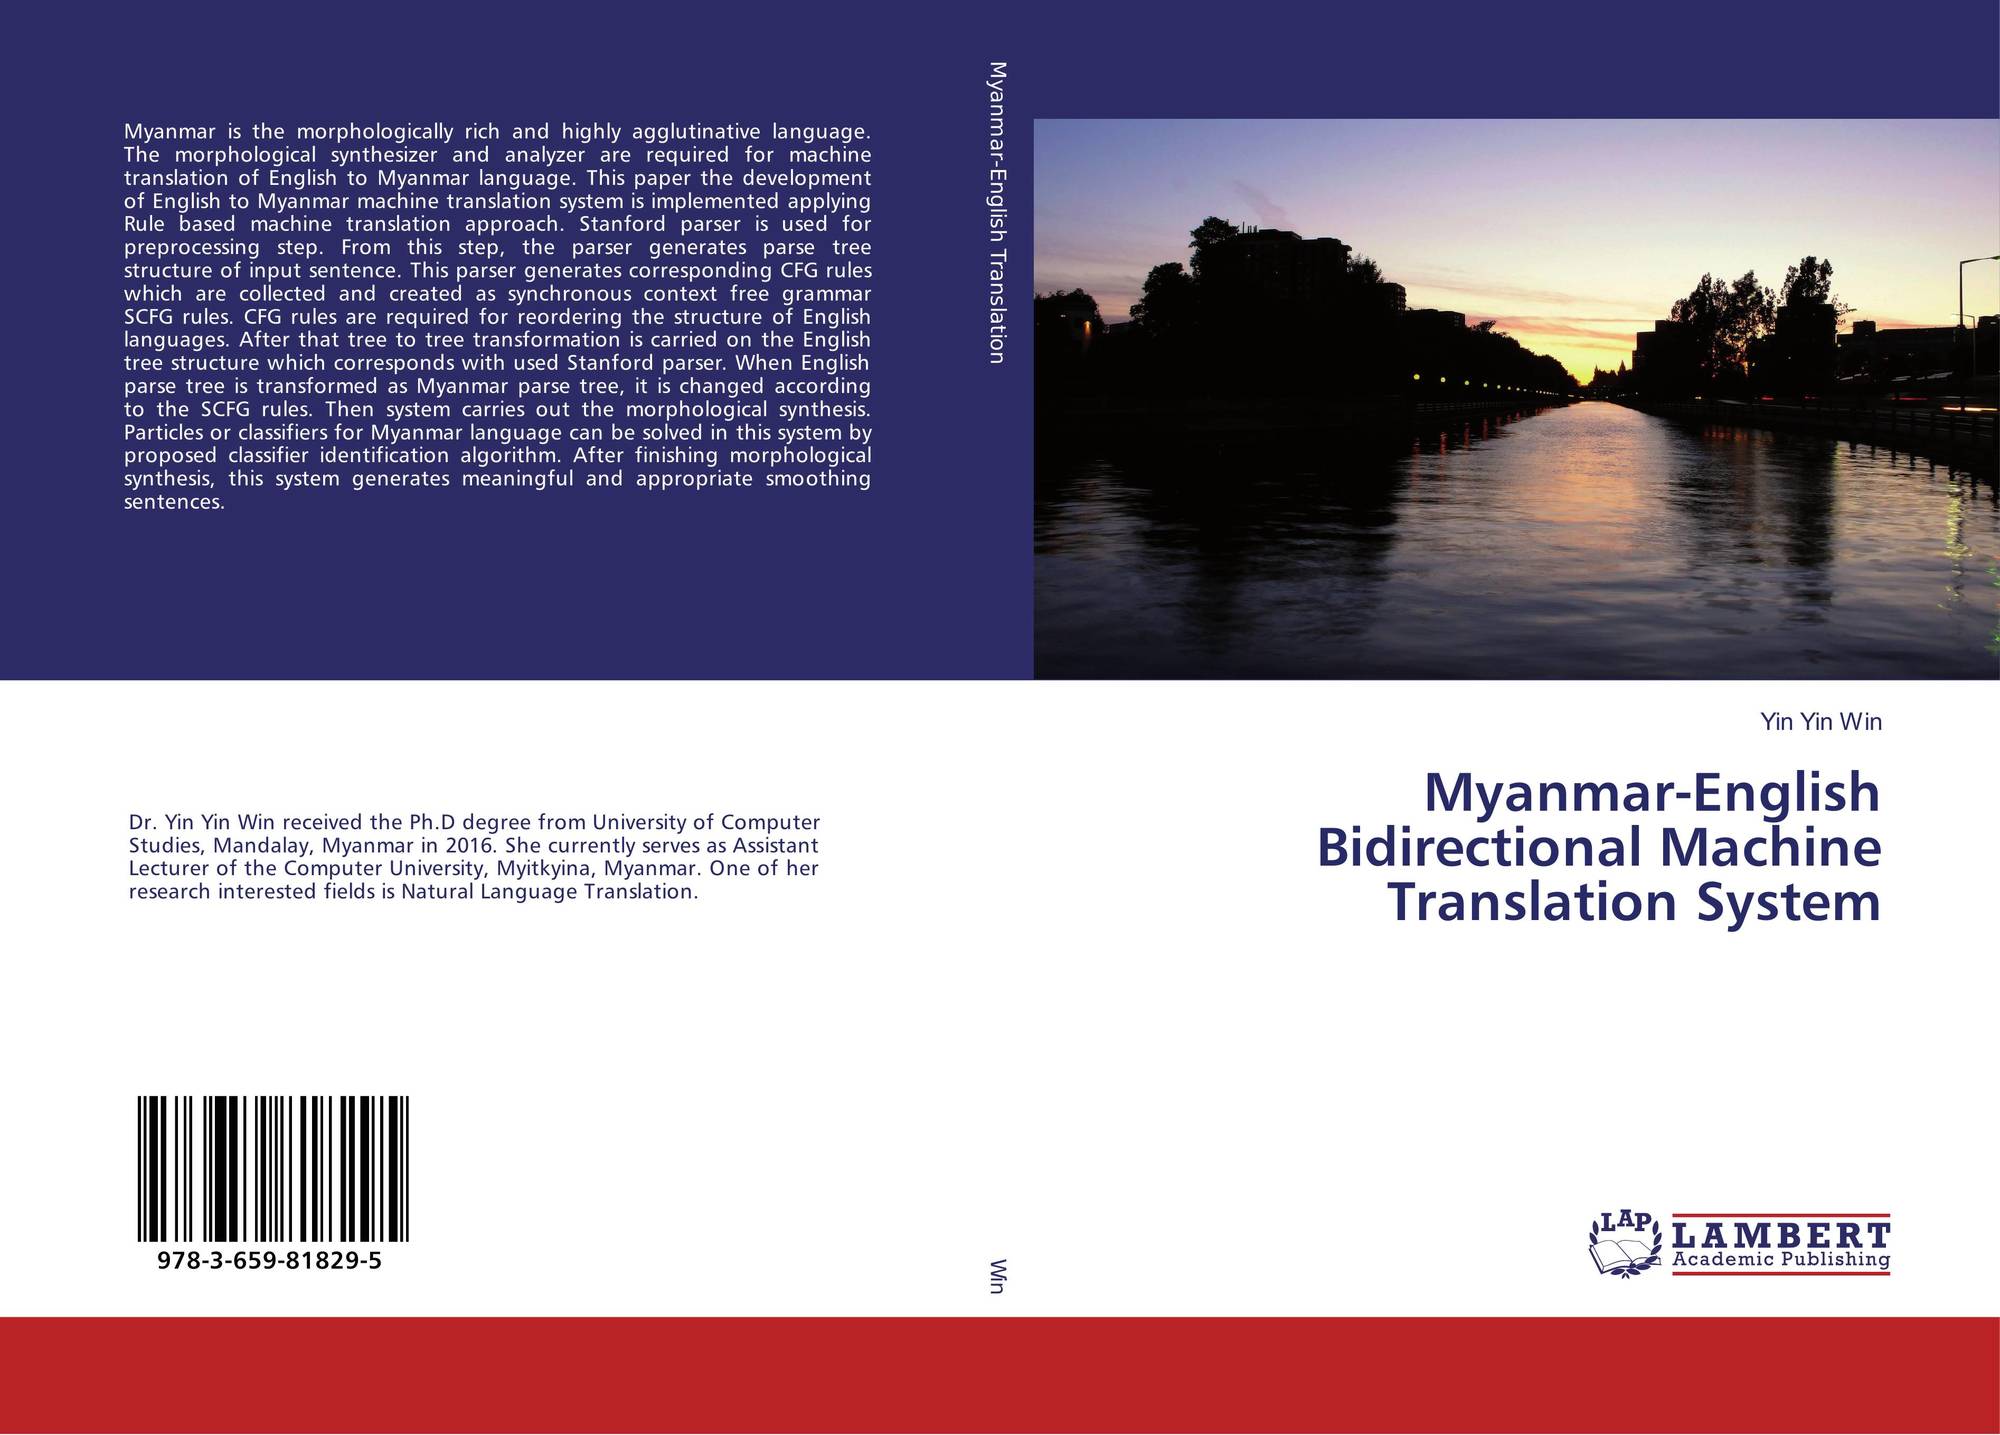 english to myanmar language translation